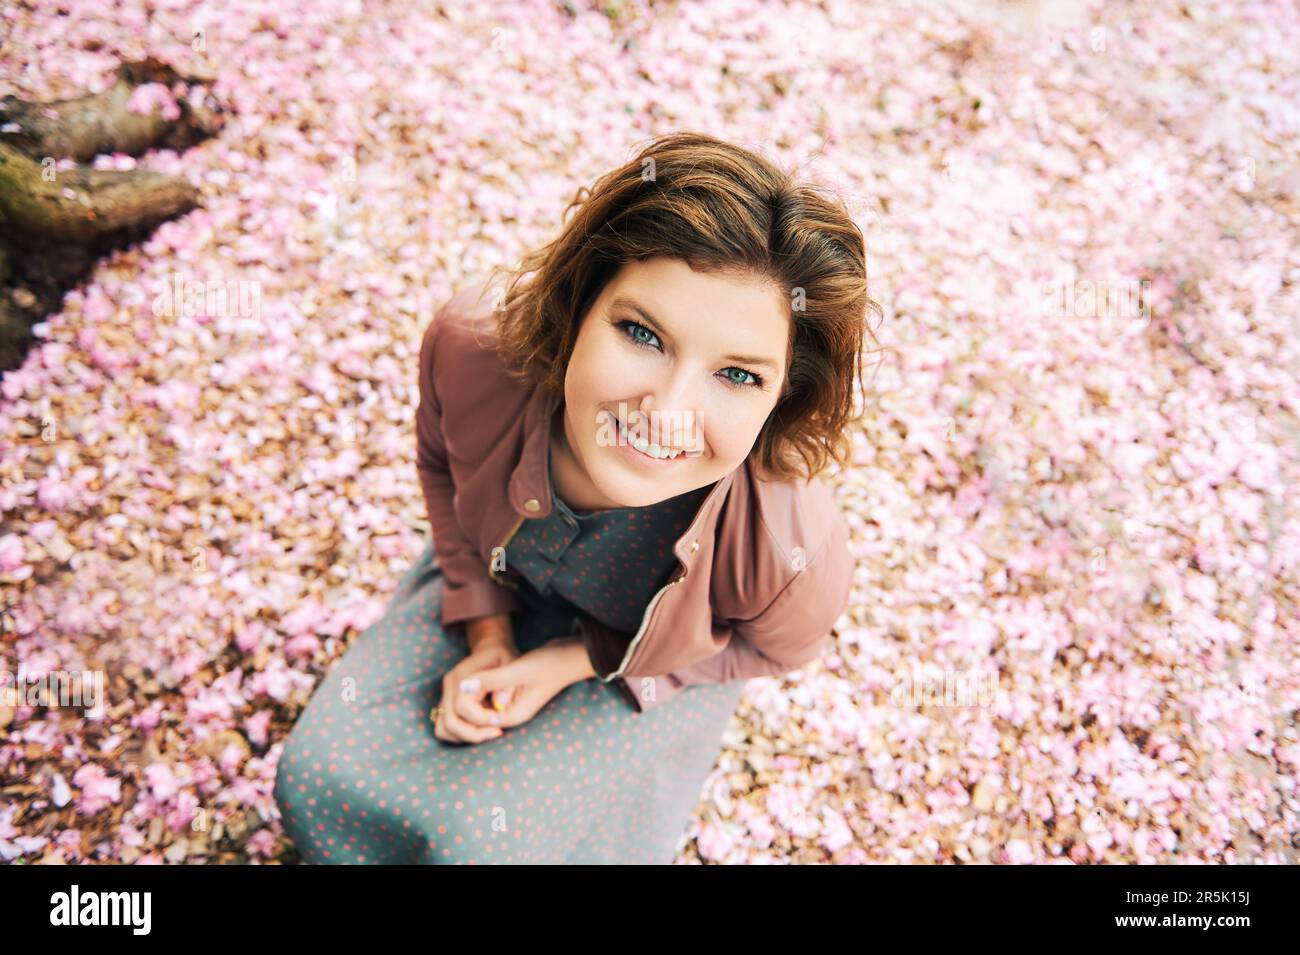 Frühlingsporträt im Freien mit einer lächelnden glücklichen Frau, die in die Kamera schaut, rosa Blütenblätter auf dem Hintergrund blüht und eine braune Lederjacke trägt Stockfoto